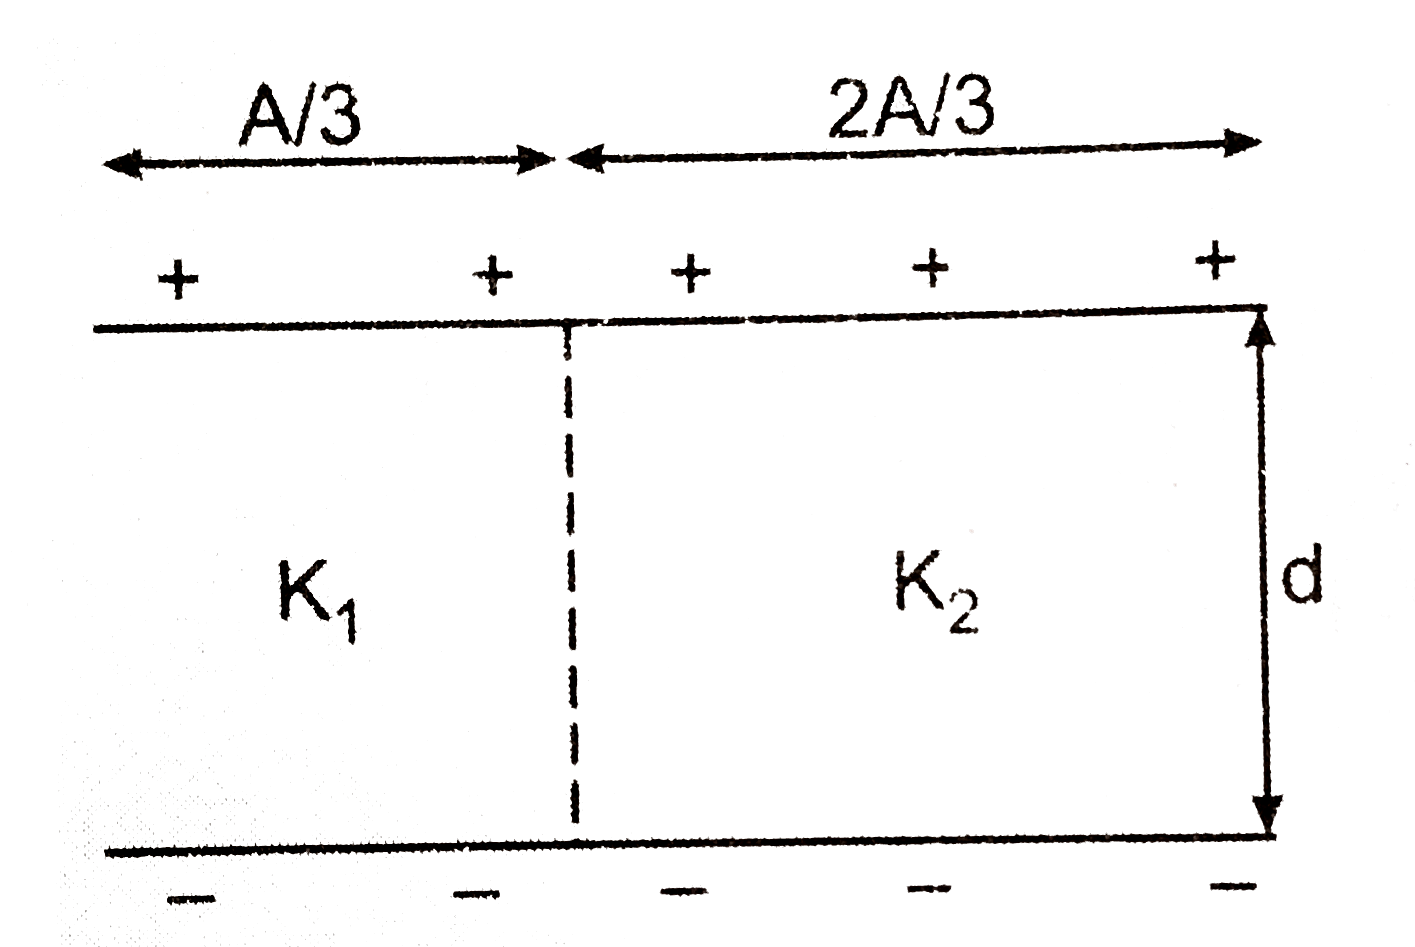 एक समांतर प्लेट संधारित्र की प्रत्येक प्लेट का क्षेत्रफल A तथा उनके बीच की दुरी d हैं। चित्र (a) के अनुसार प्लेटों के बीच K(1) तथा K(2) परावैघुतांक  के गुटके रखे हैं। संधारित्र की धारिता ज्ञात कीजिये।